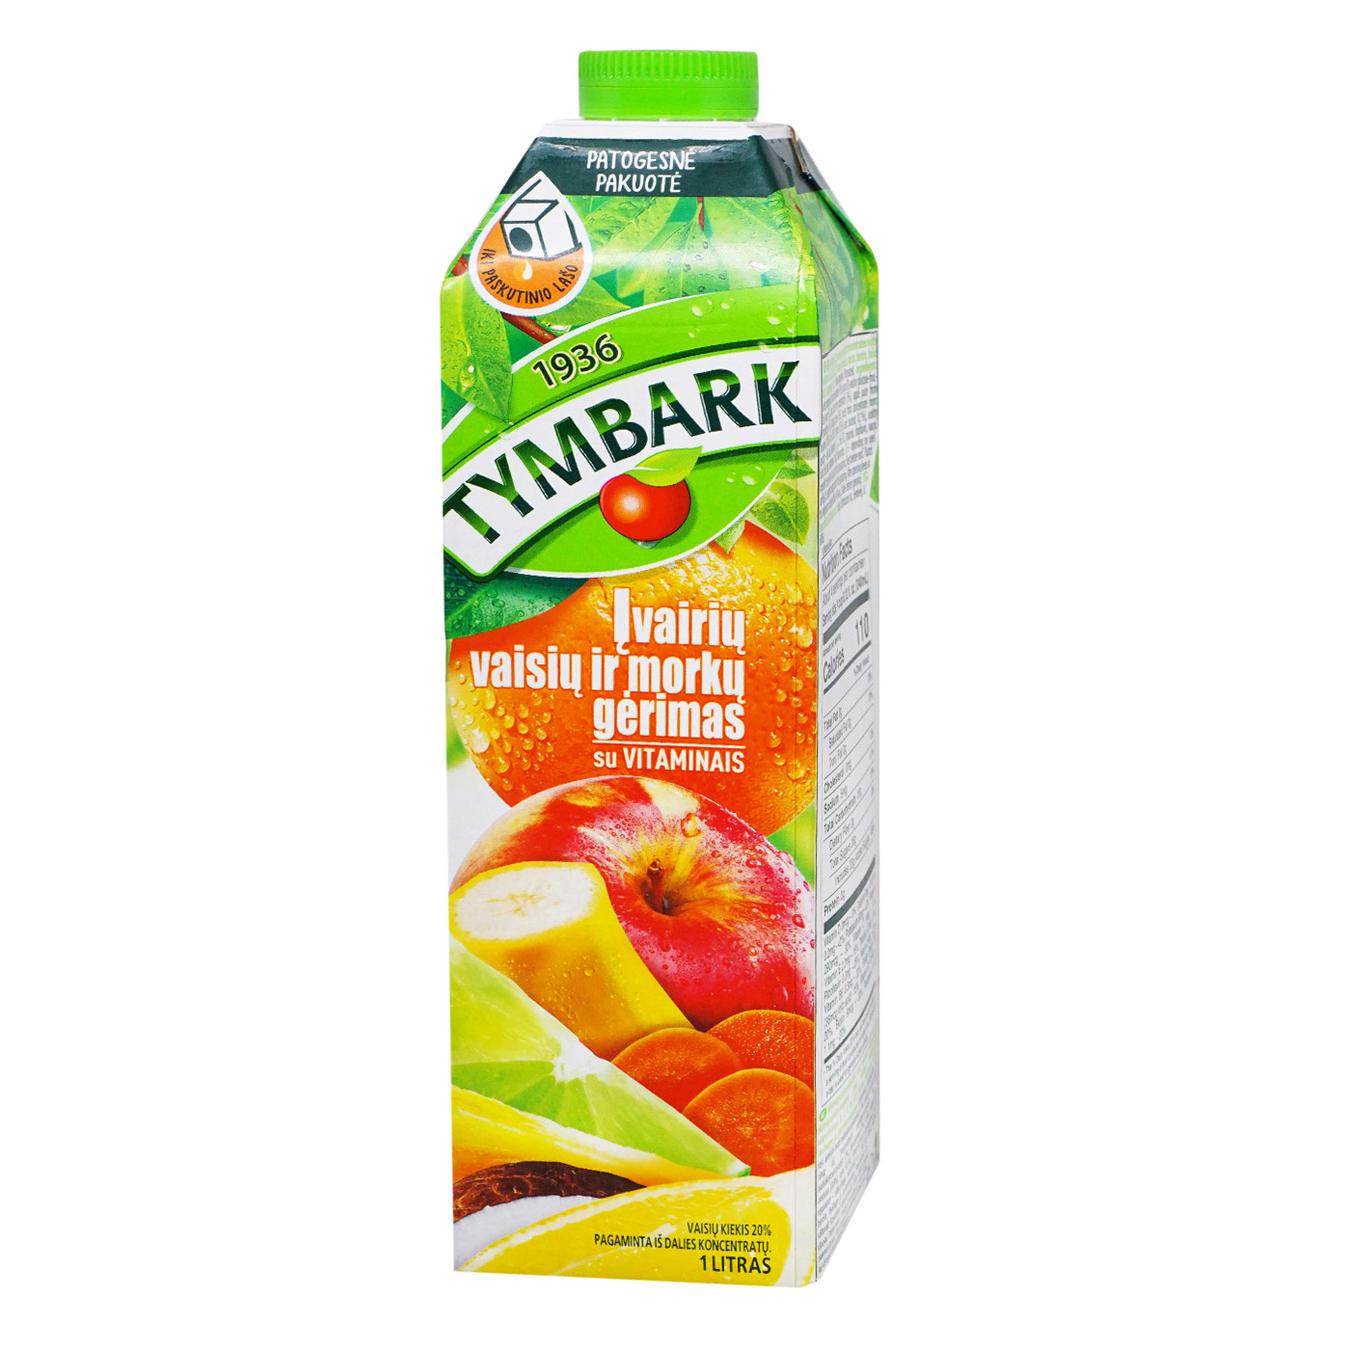 Tymbark multifruit carrot drink 1liter